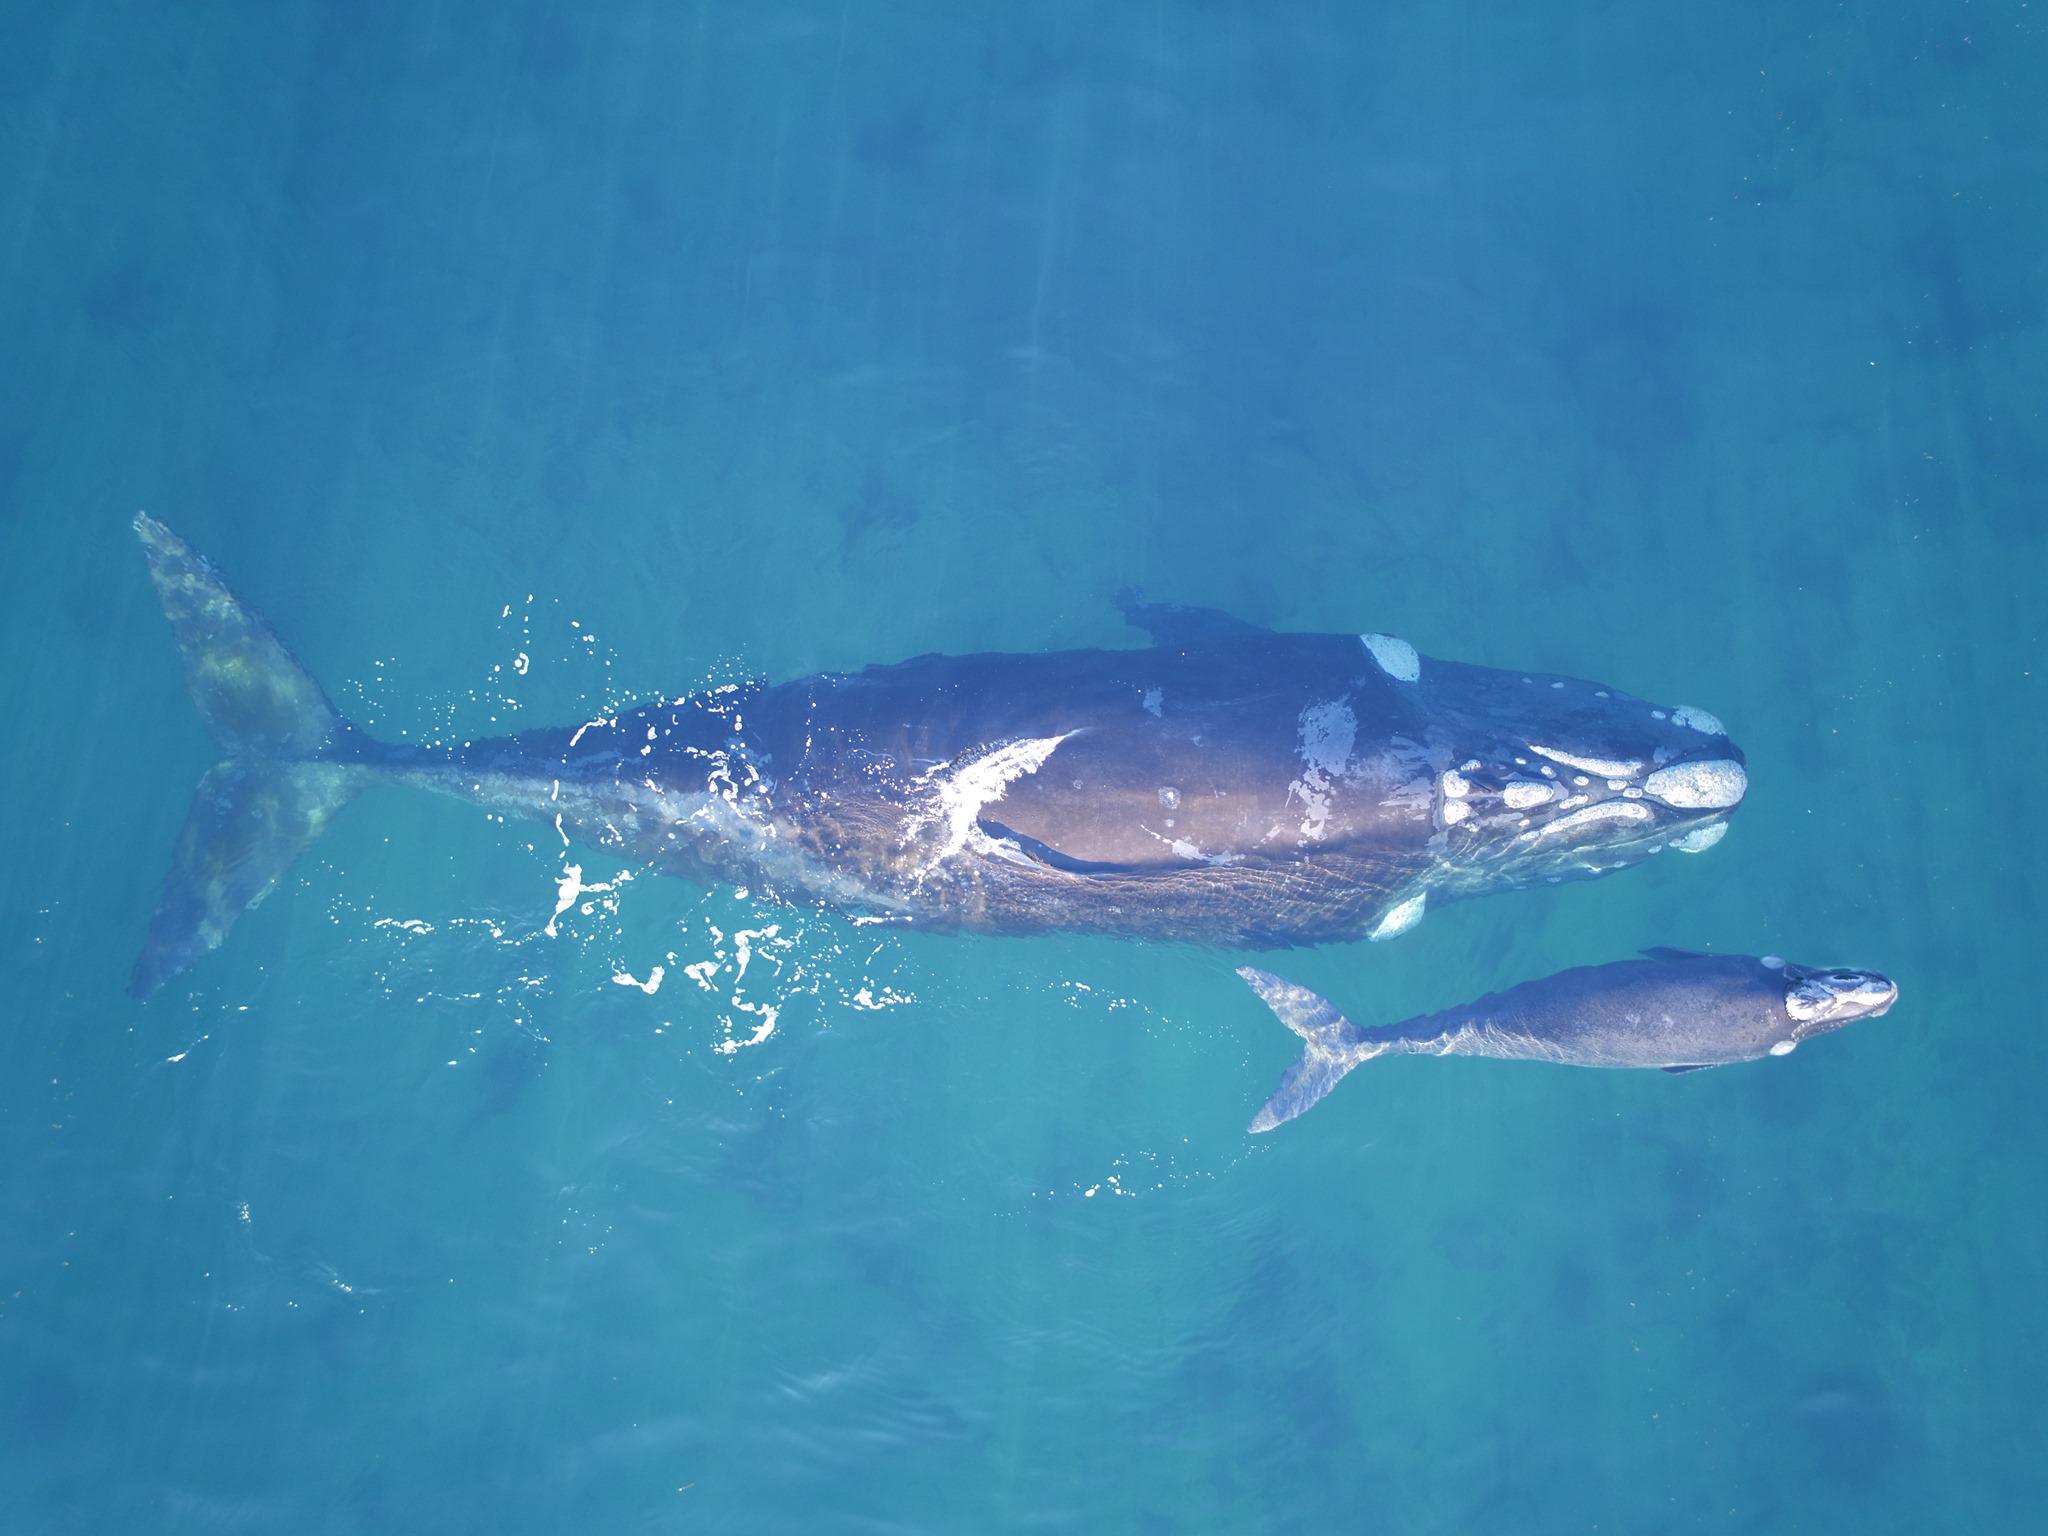 "Las ballenas nos alertan sobre la contaminación de los mares. ¡Tu granito de arena nos ayuda a protegerlos!", dicen desde el Instituto de Conservación de Ballenas
@icb.argentina 